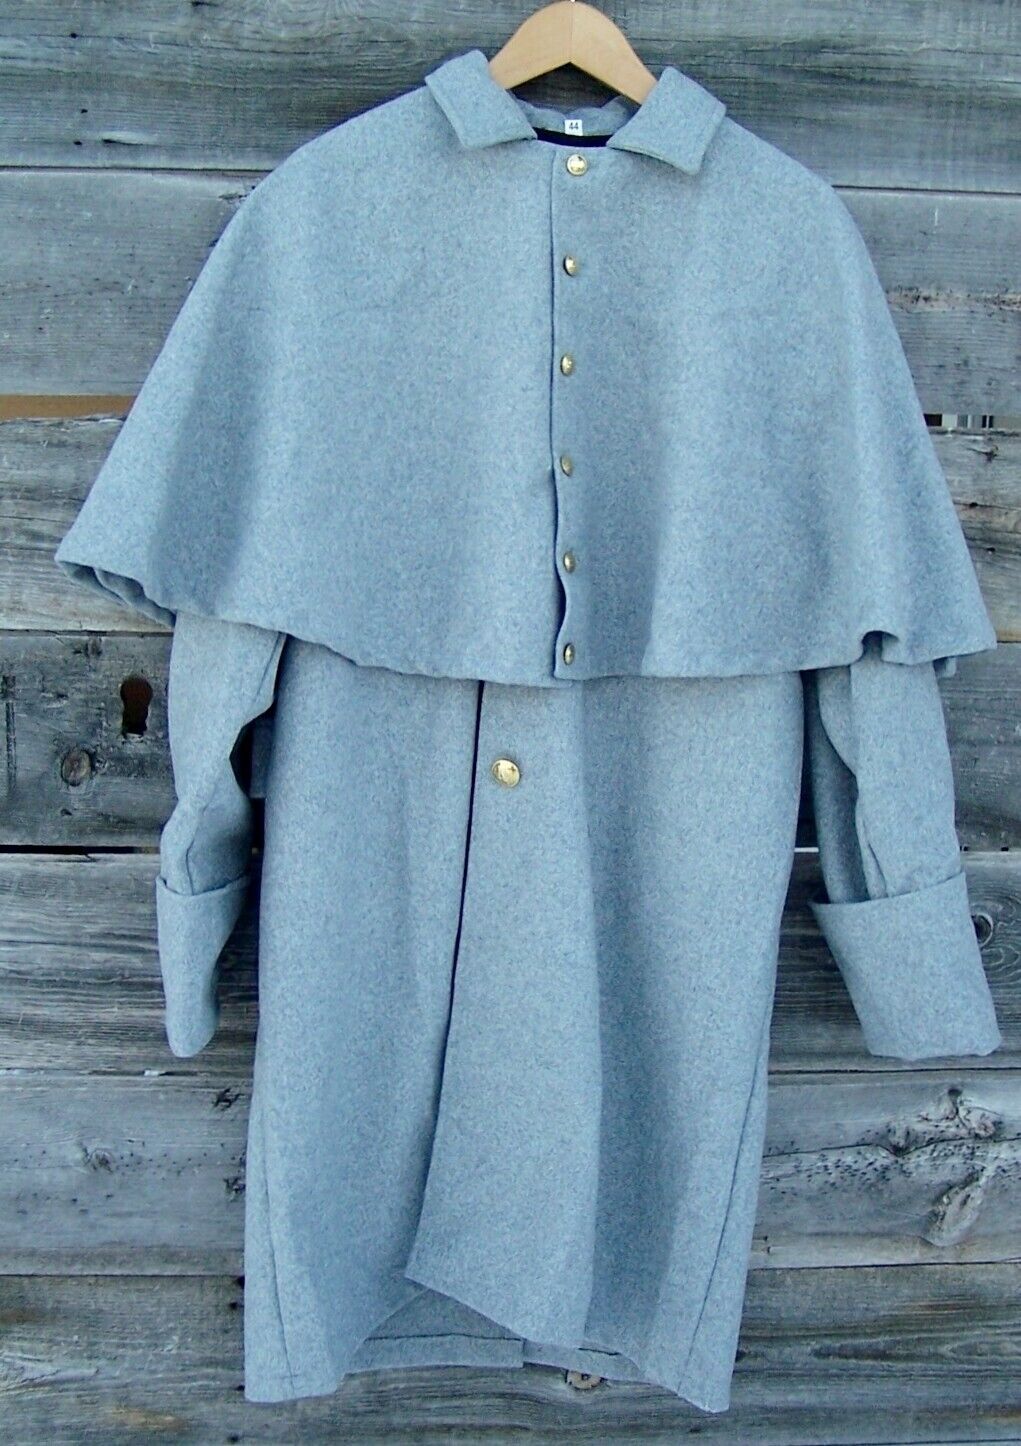 Civil War Confederate Gray Great Coat 48